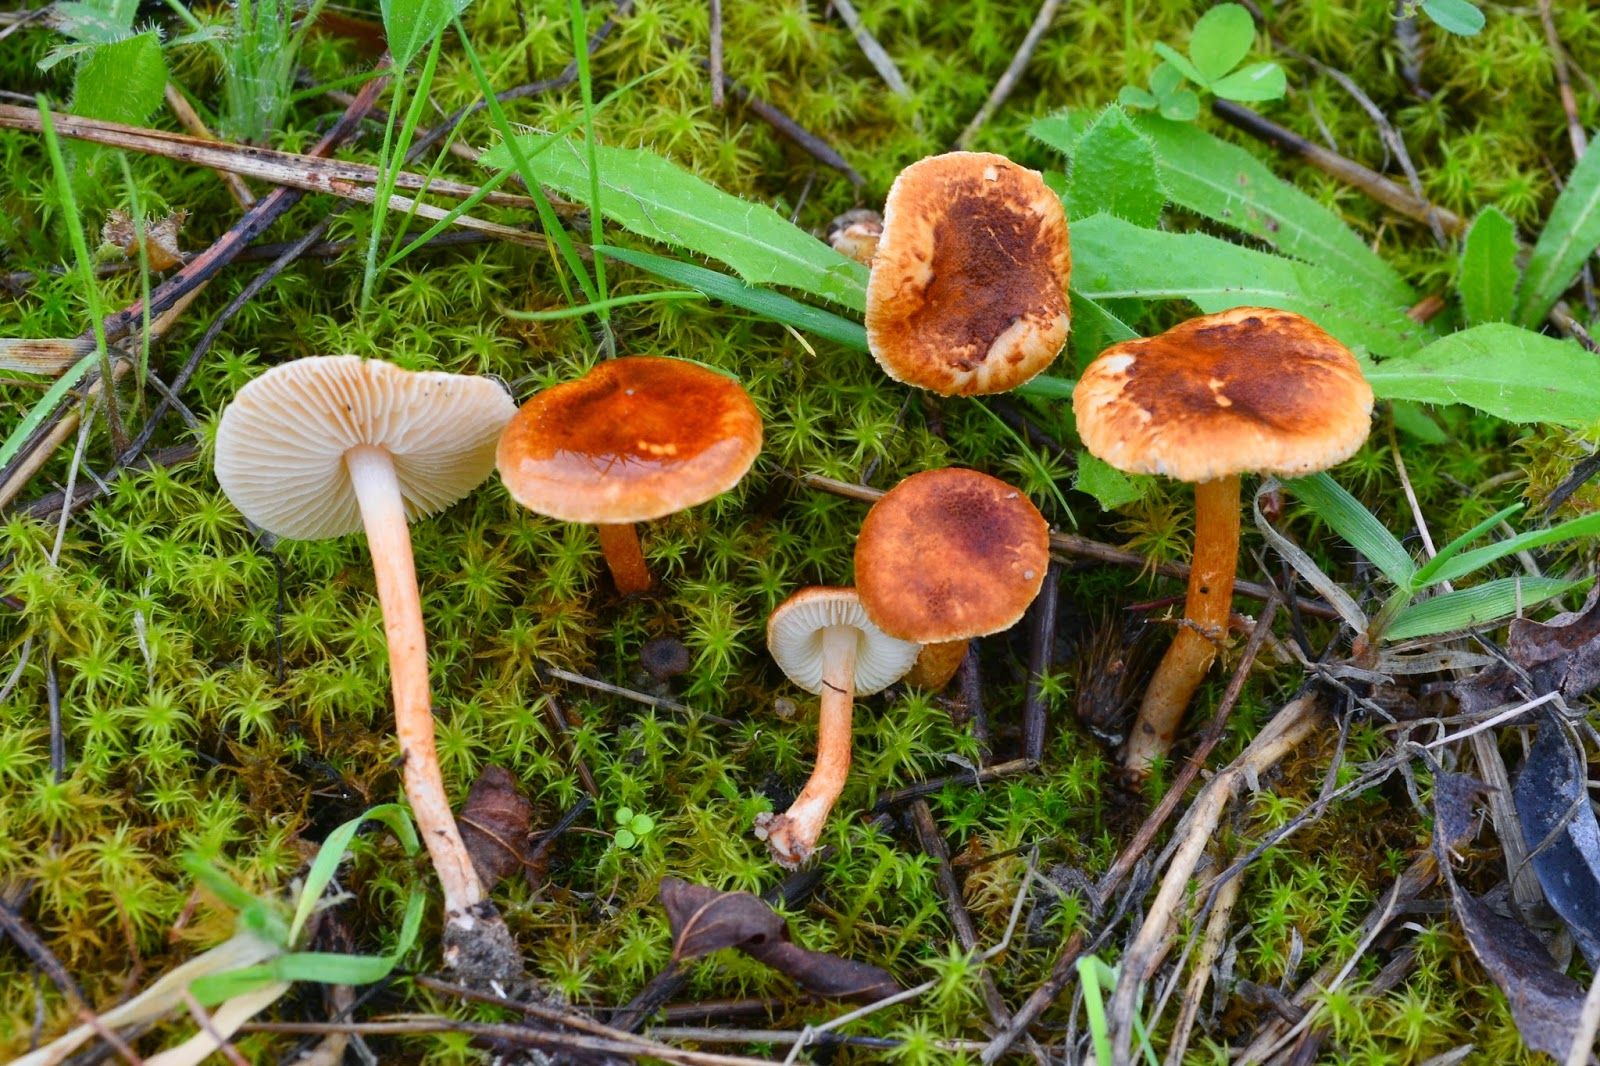 Лепиоты – ядовитые грибы – энциклопедия «гриб-инфо»